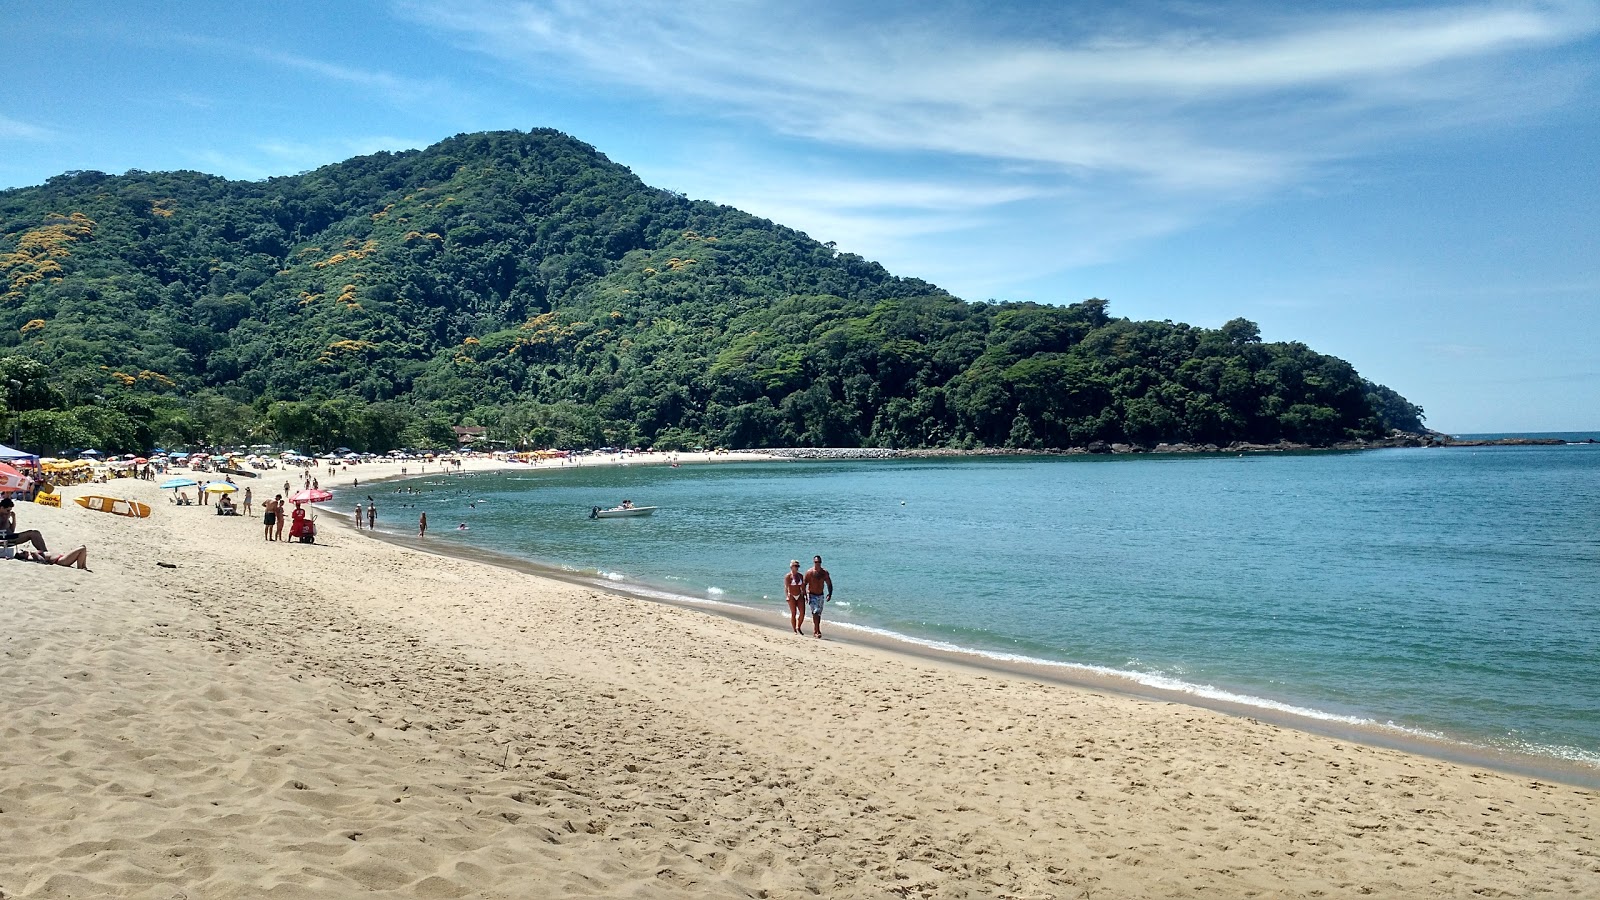 Boicucanga Plajı'in fotoğrafı parlak kum yüzey ile